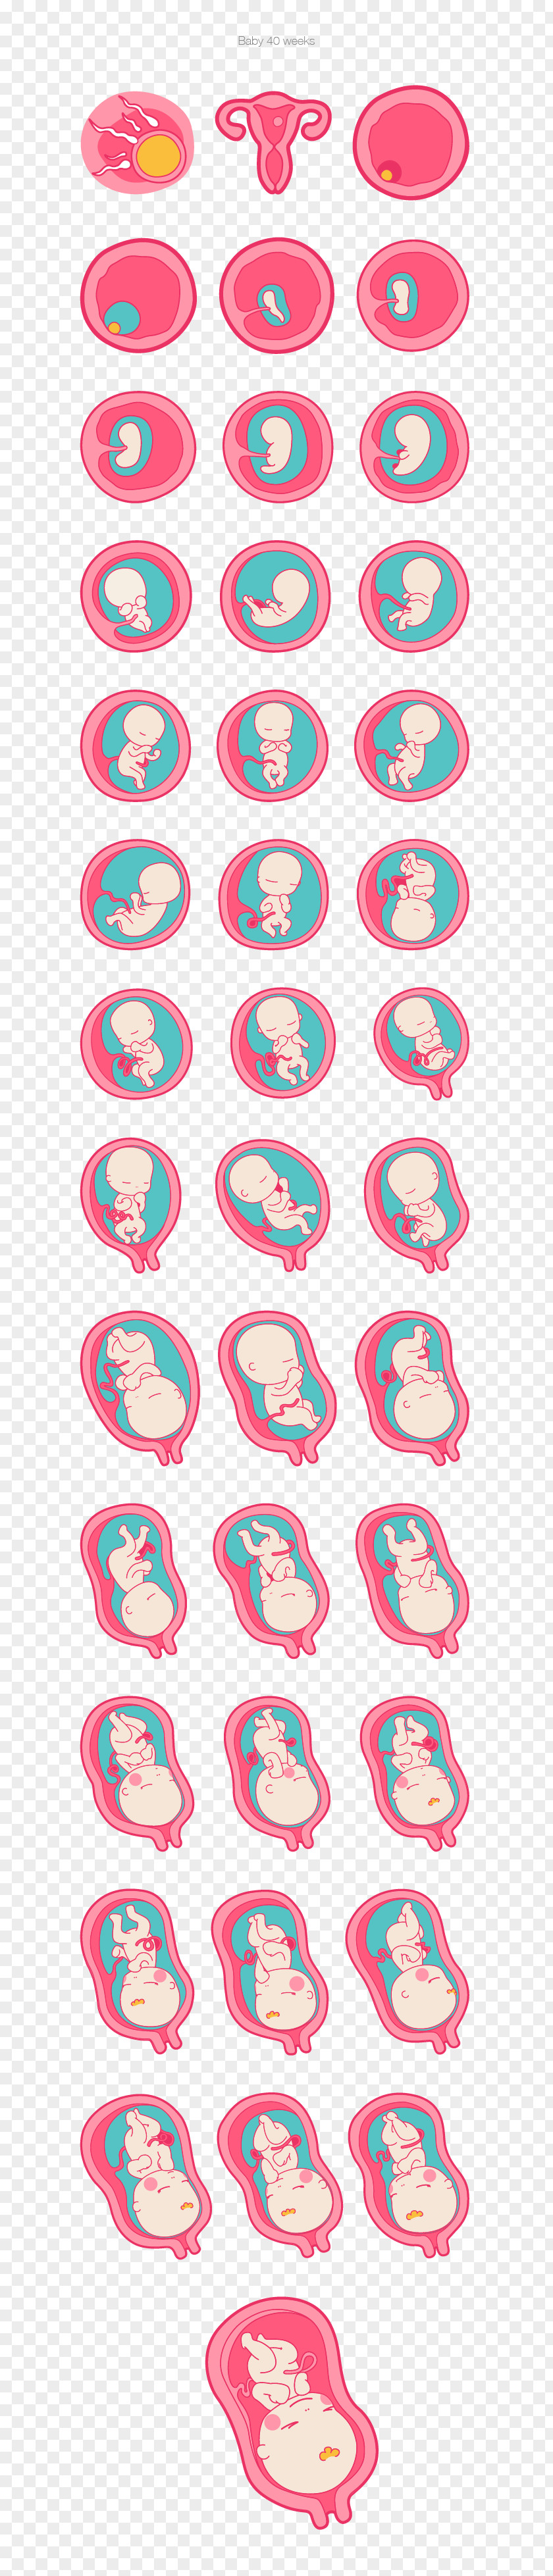 Cycle Pregnancy Image Fertilisation Infant Prenatal Development PNG